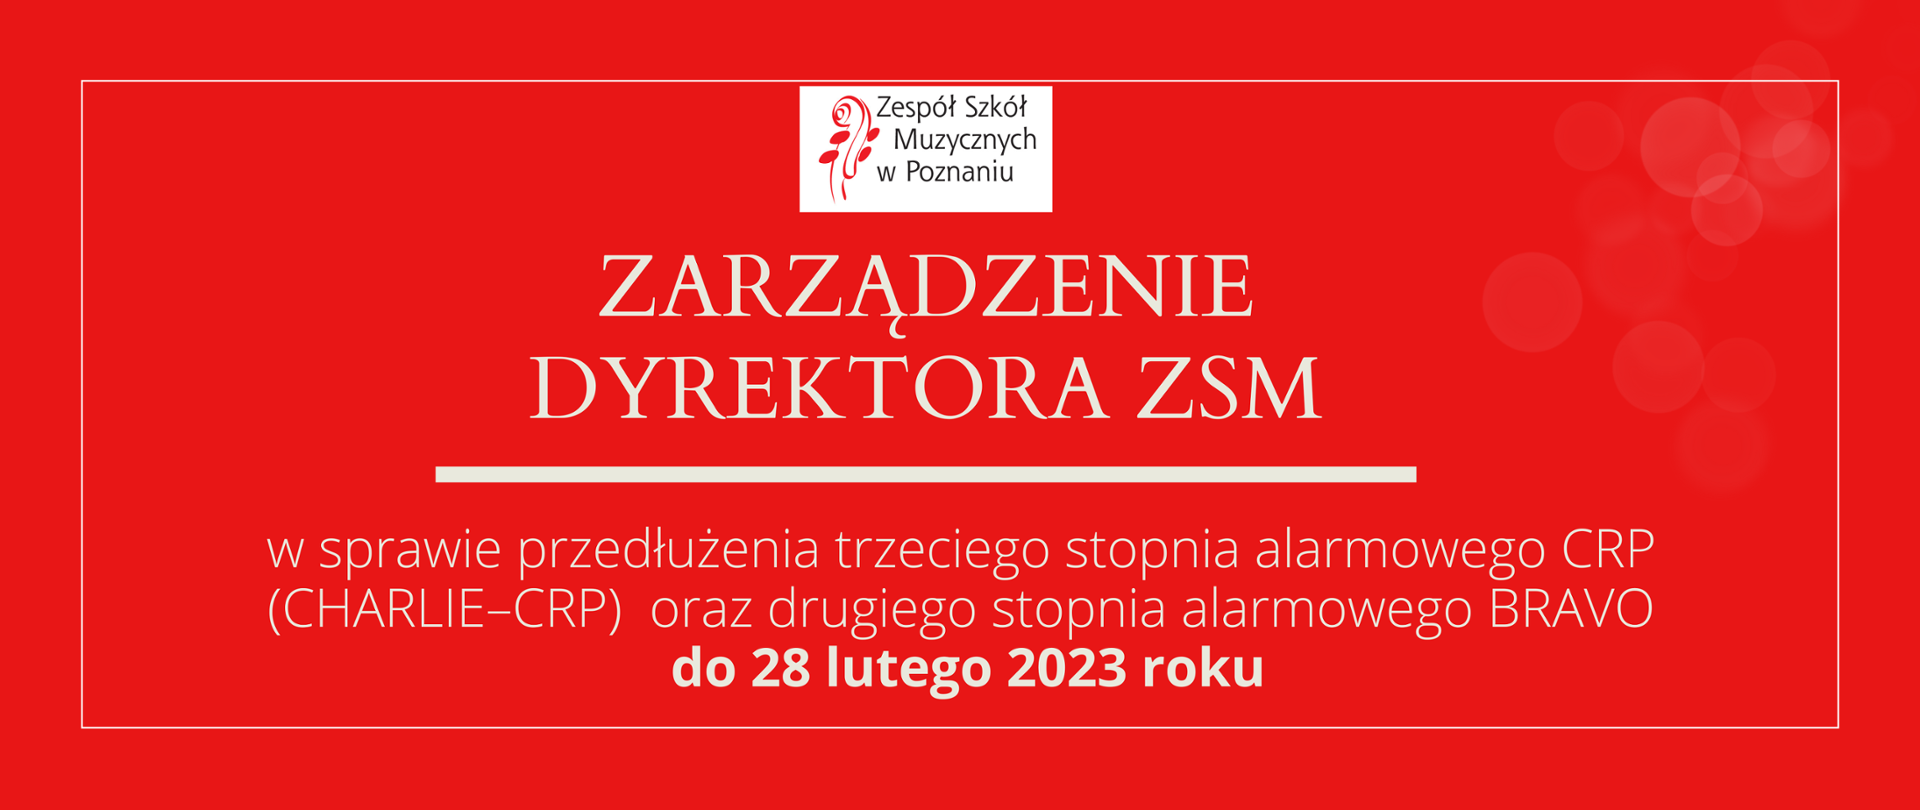 Grafika na czerwonym tle. Do góry logo ZSM, poniżej tekst: ZARZĄDZENIE DYREKTORA ZSM. W sprawie w sprawie przedłużenia trzeciego stopnia alarmowego CRP (CHARLIE–CRP) oraz drugiego stopnia alarmowego BRAVO do 28 lutego 2023 roku
